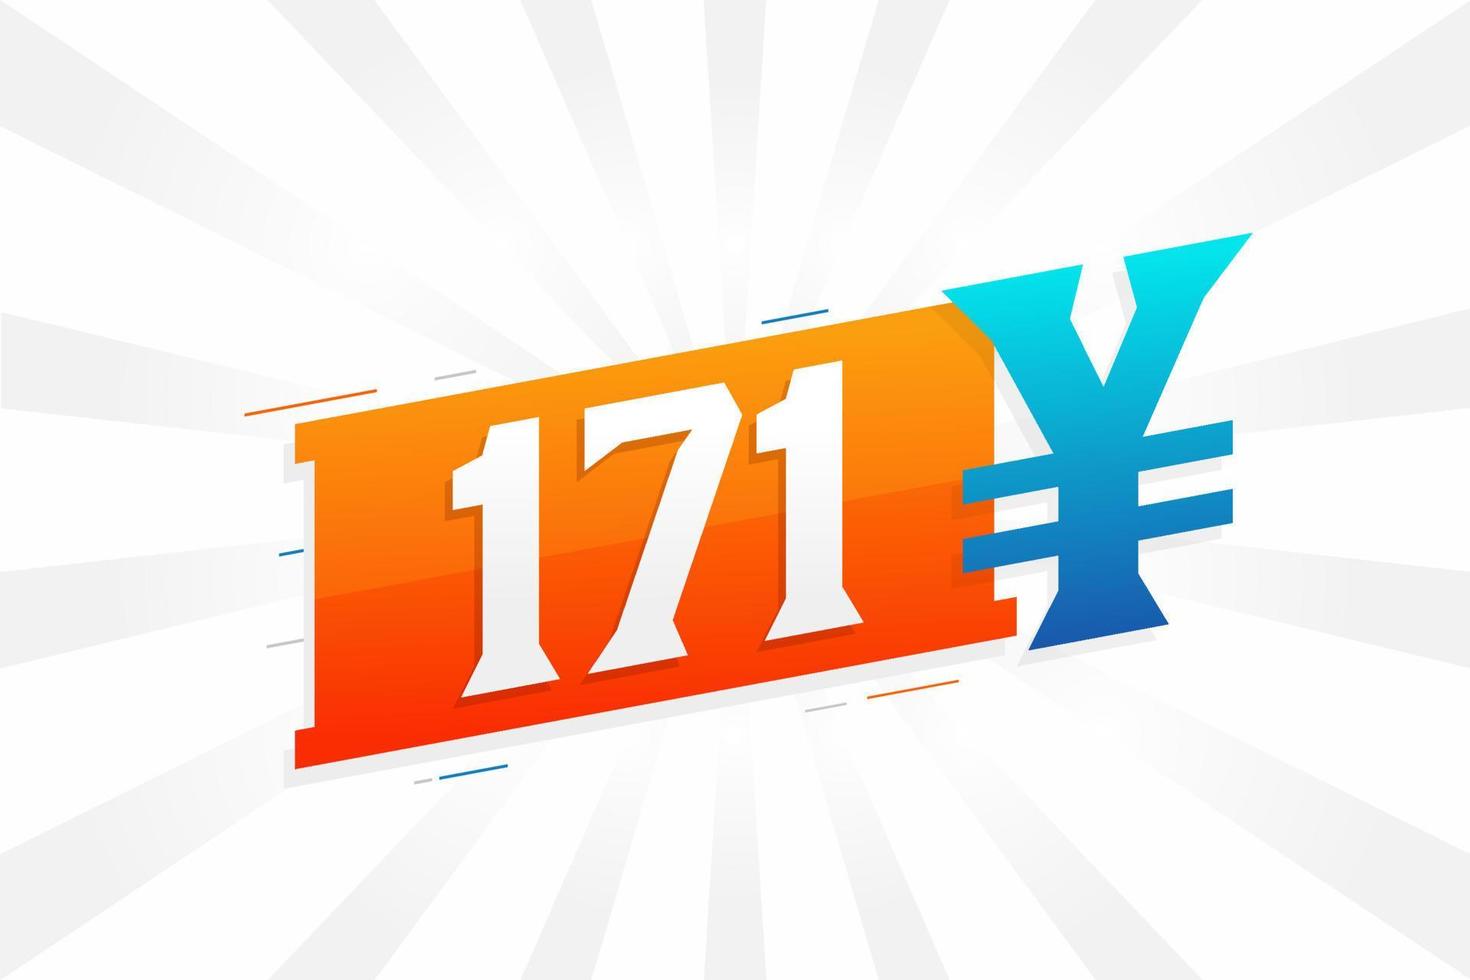 Símbolo de texto vectorial de moneda china de 171 yuanes. 171 yen moneda japonesa dinero stock vector